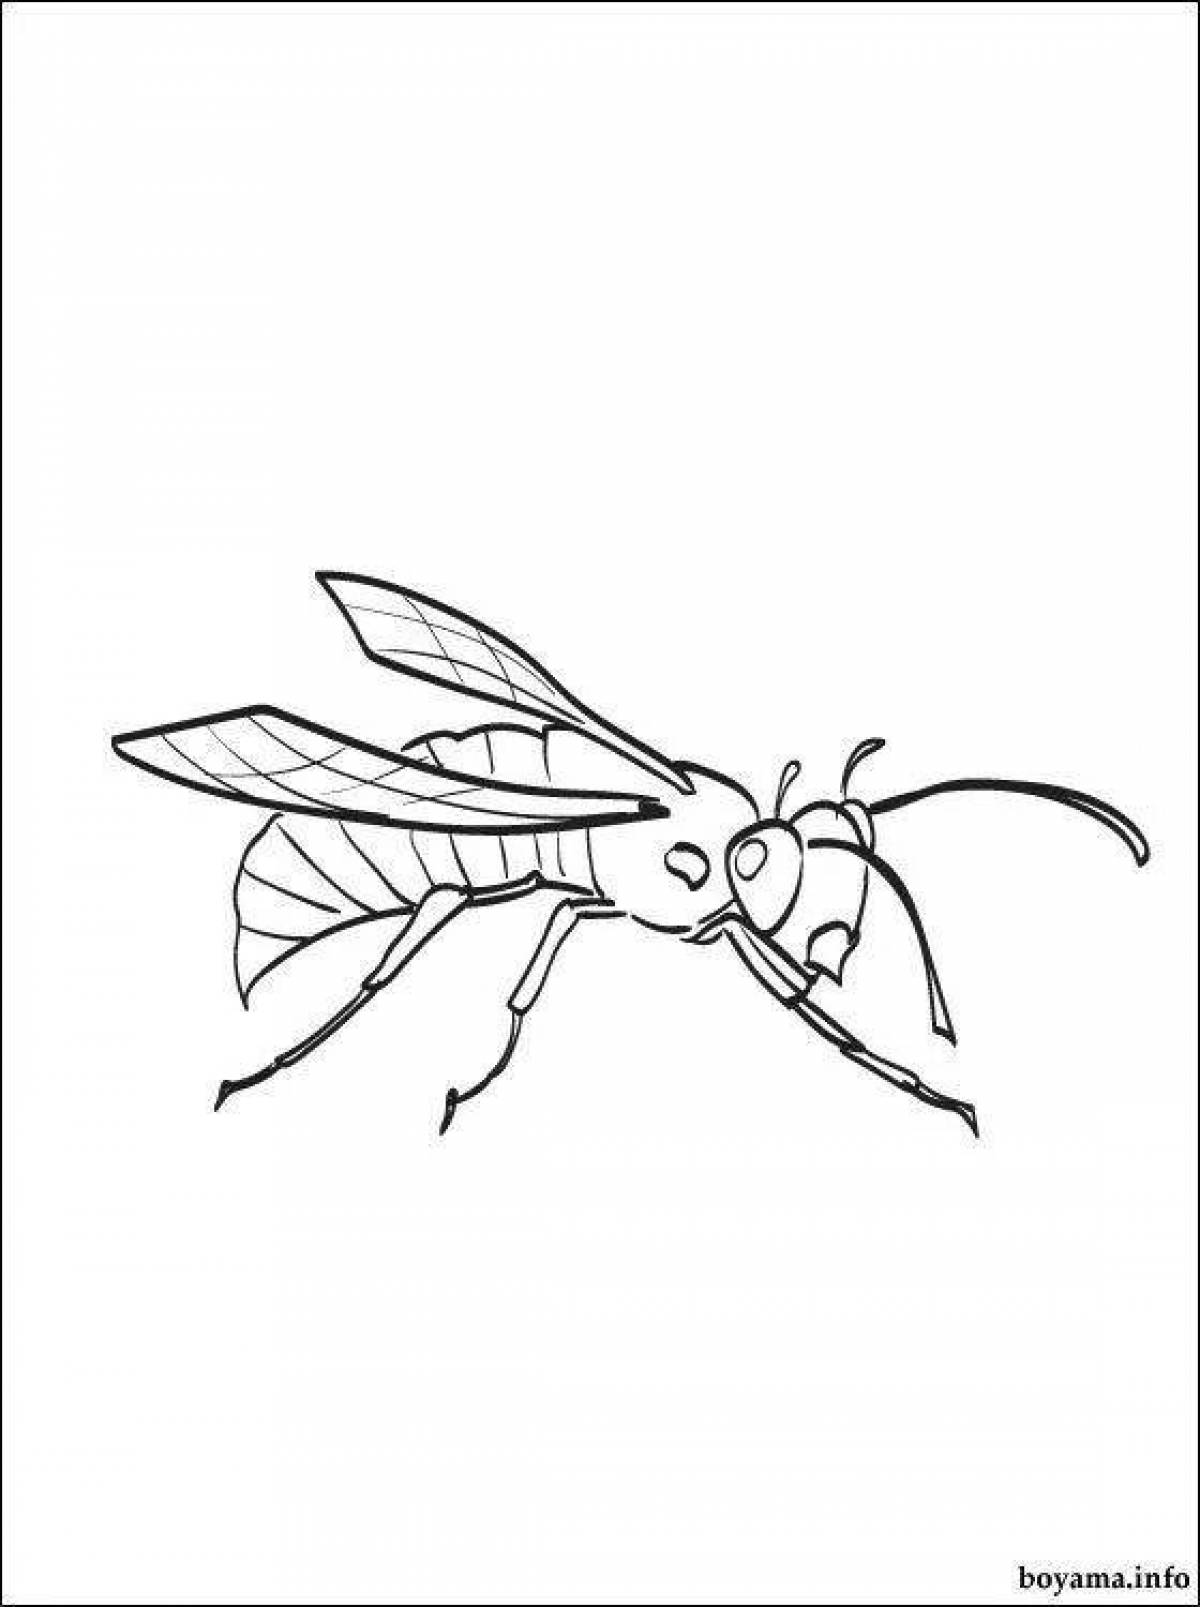 Восхитительная раскраска осы для детей